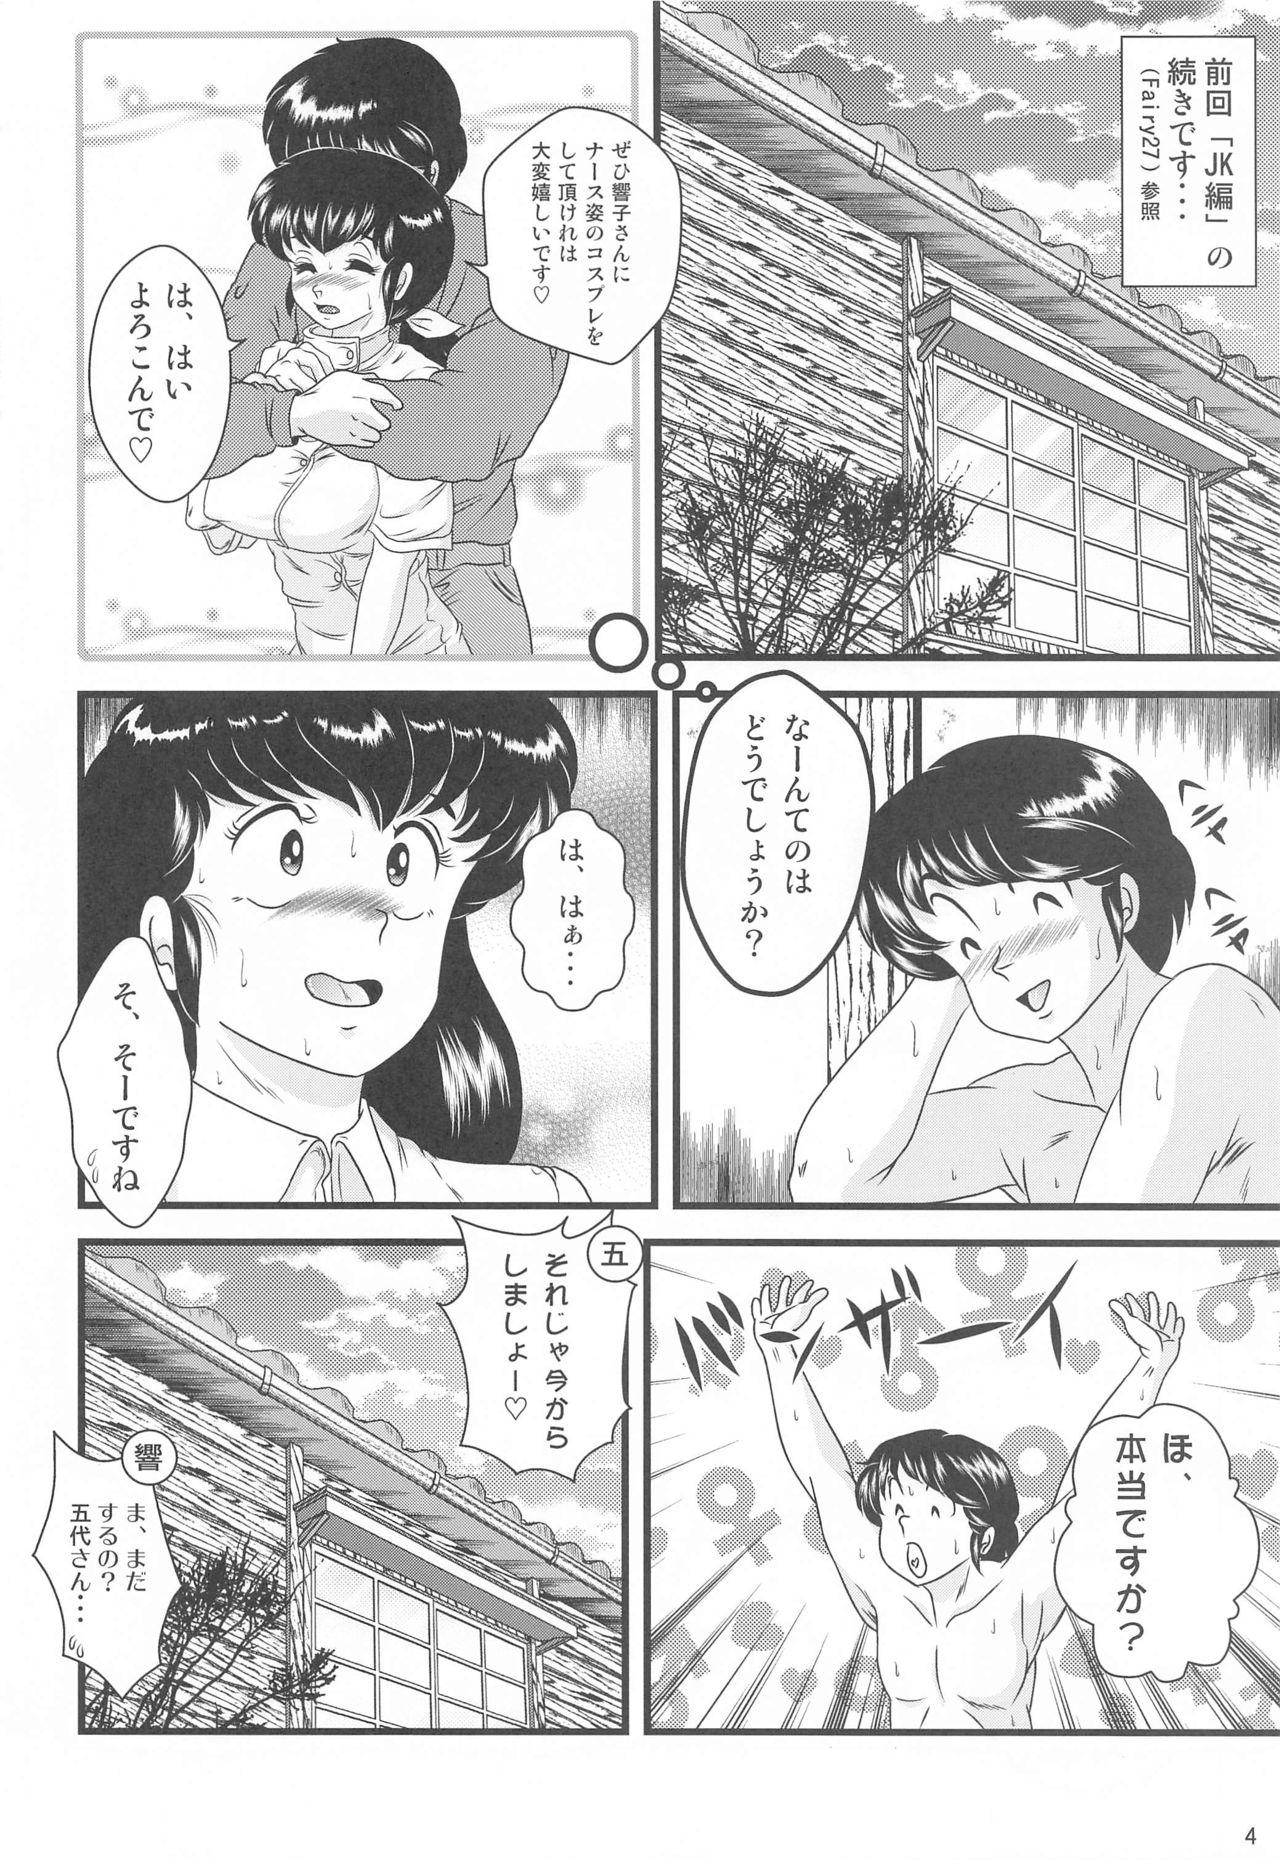 Furry Fairy 28 - Maison ikkoku Alone - Page 3